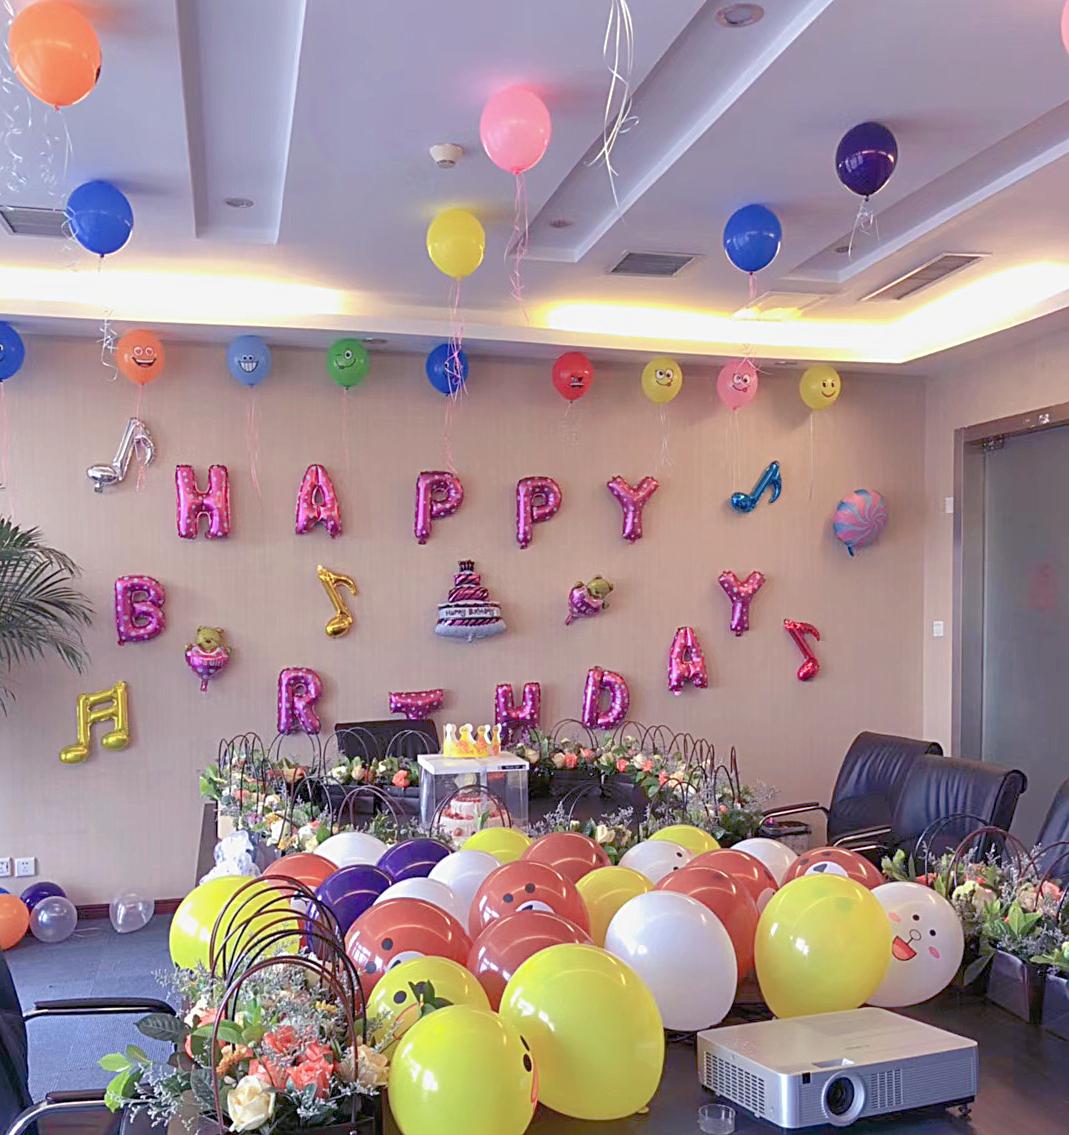 百金贷同事们连夜布置的生日趴,粉色气球和鲜花,还有逗萌的卡通形象